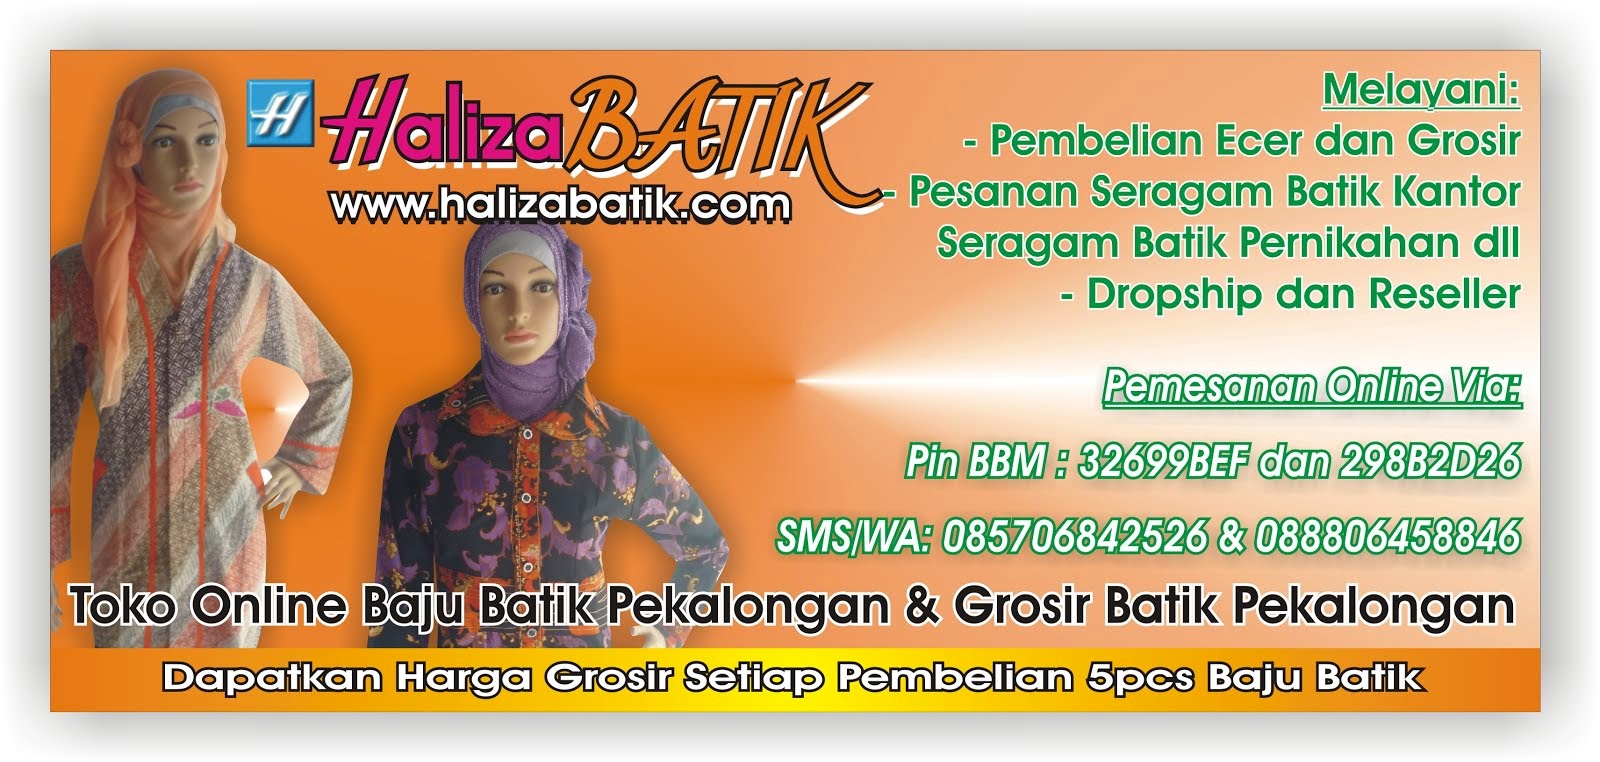 Model Batik Haliza, Seragam Batik Haliza, Batik Pekalongan Haliza